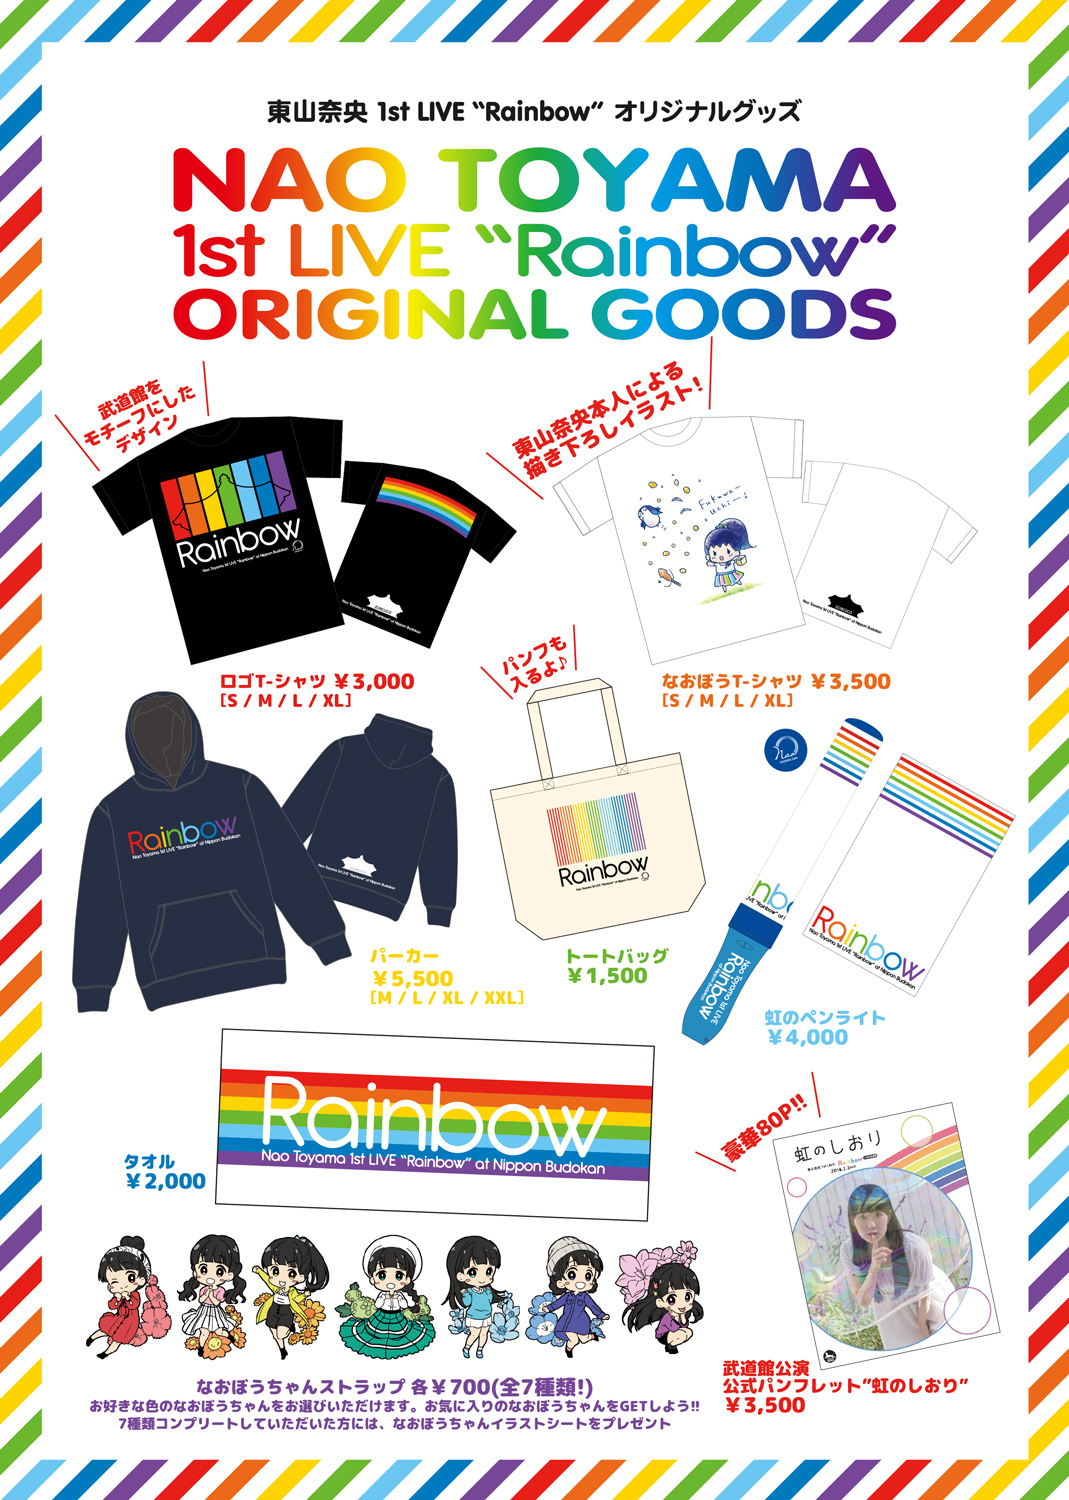 東山奈央 1st Live Rainbow オリジナルグッズ 東山奈央 オフィシャルサイト